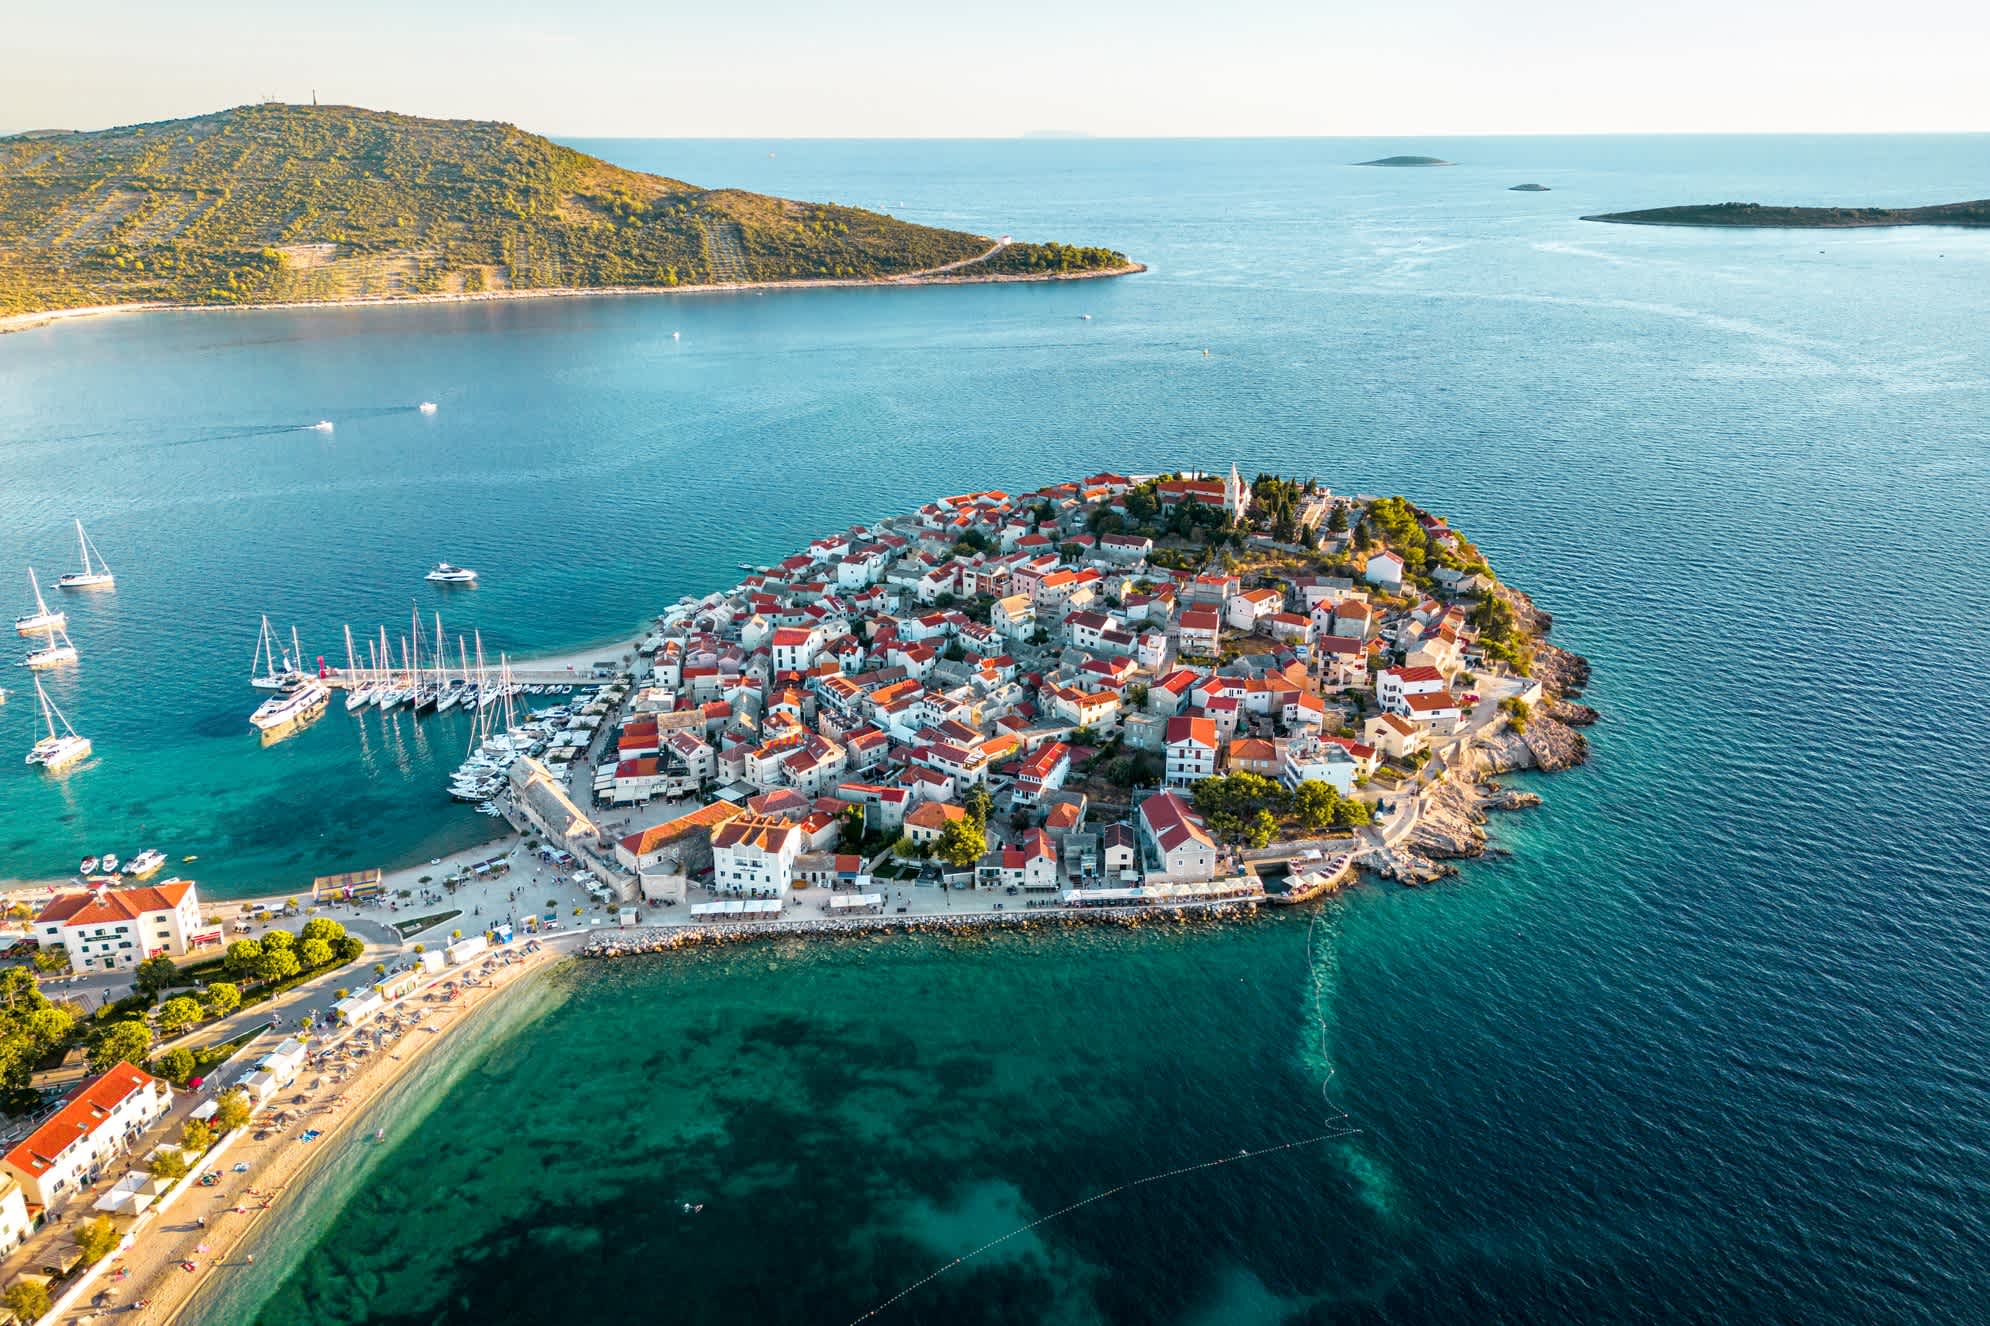 Primosten ist eine Gemeinde in der Gespanschaft Sibenik-Knin, Kroatien. Es liegt im Süden, zwischen den Städten Šibenik und Trogir, an der Adriaküste. In der Vergangenheit lag Primosten auf der Insel in der Nähe des Festlandes, später wurde es verbunden.